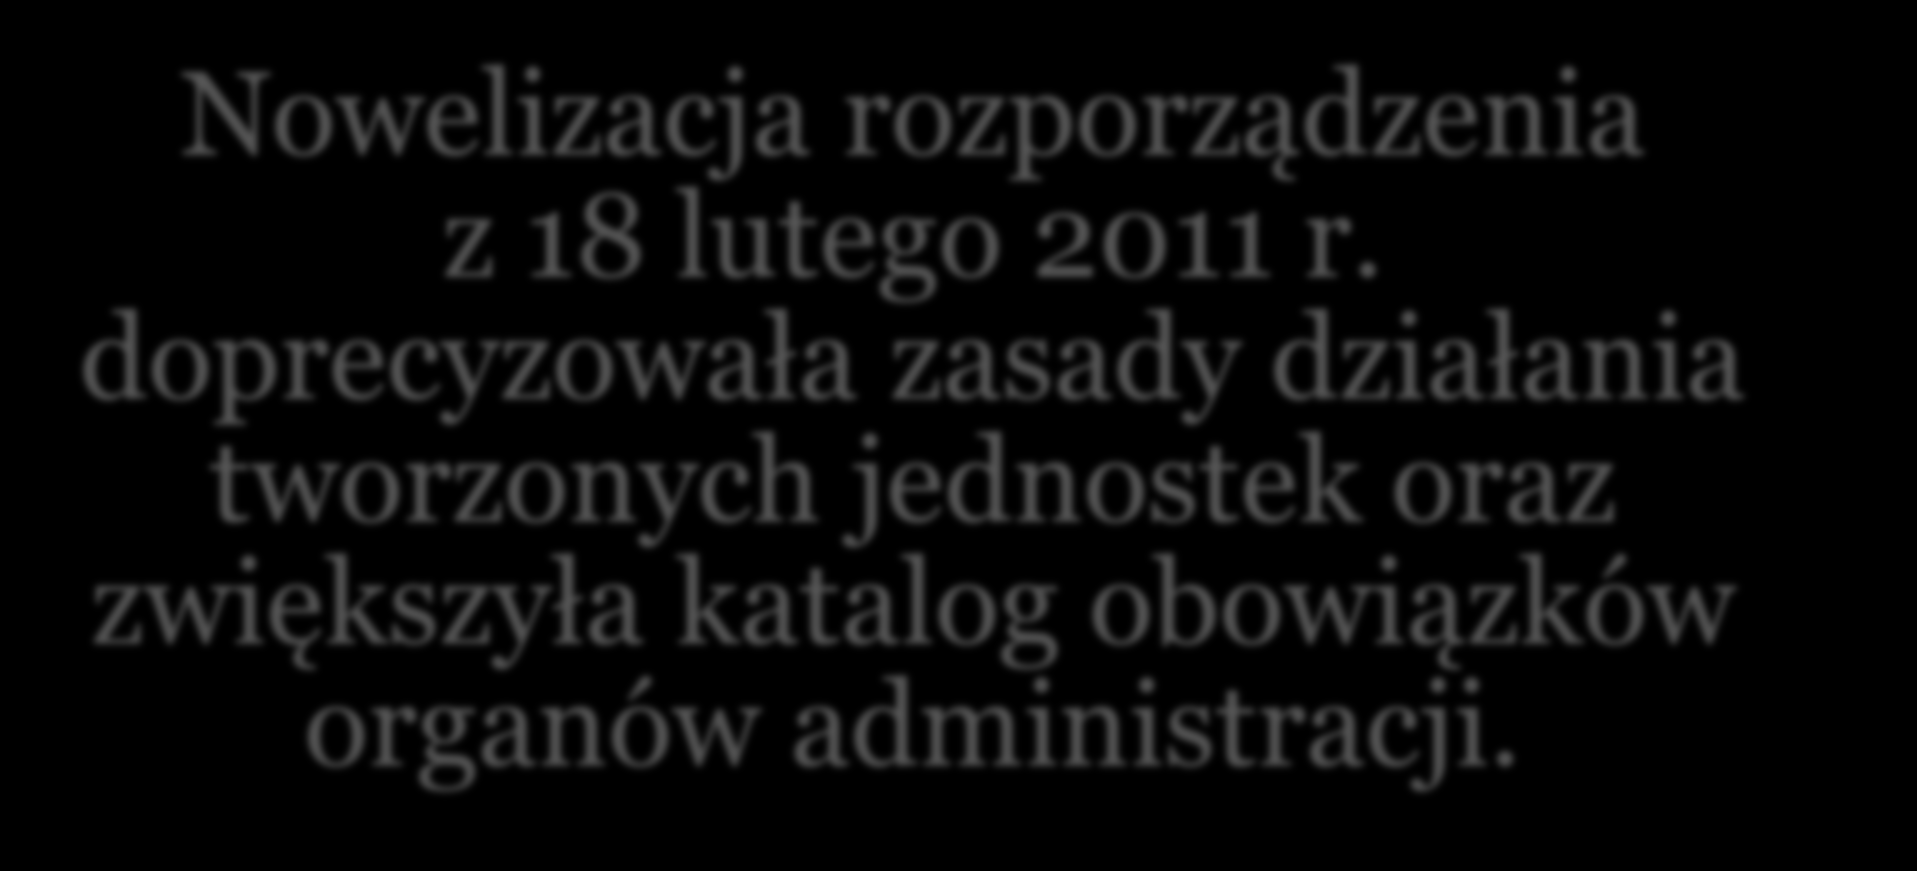 Organizacja Centrum Powiadamiana Ratunkowego Nowelizacja rozporządzenia z 18 lutego 2011 r.